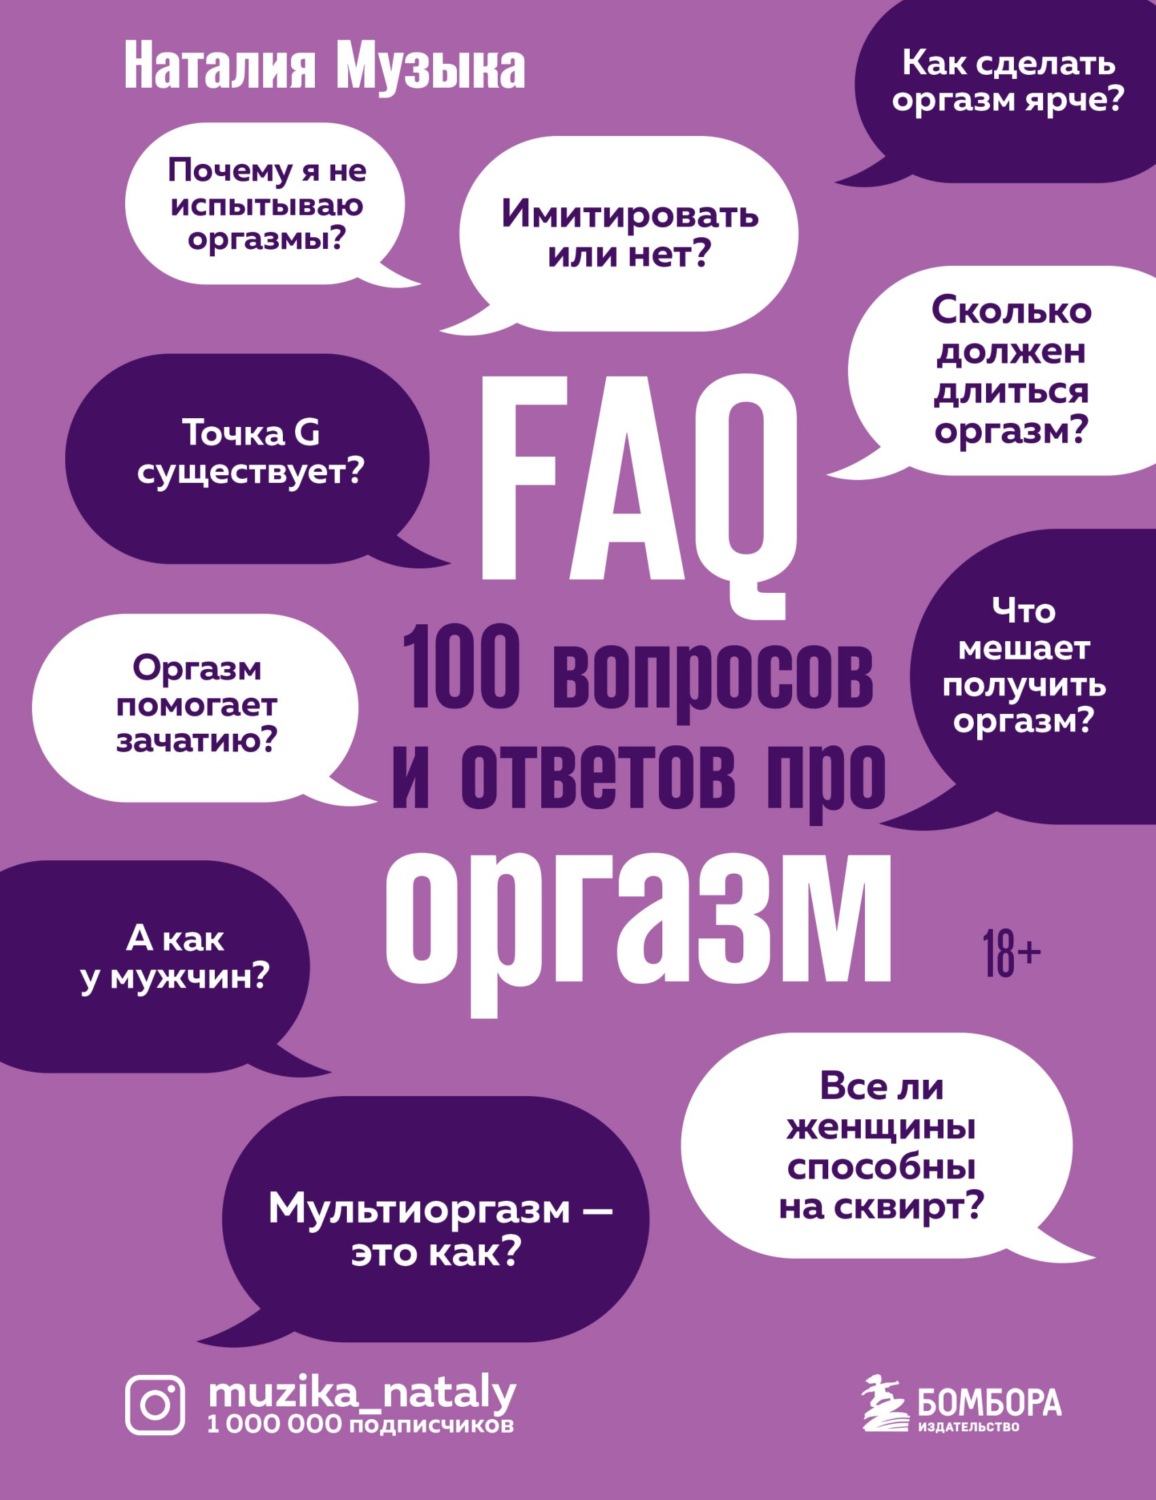 Отзывы о книге «FAQ. 100 вопросов и ответов про оргазм», рецензии на книгу Наталии Музыки, рейтинг в библиотеке Литрес